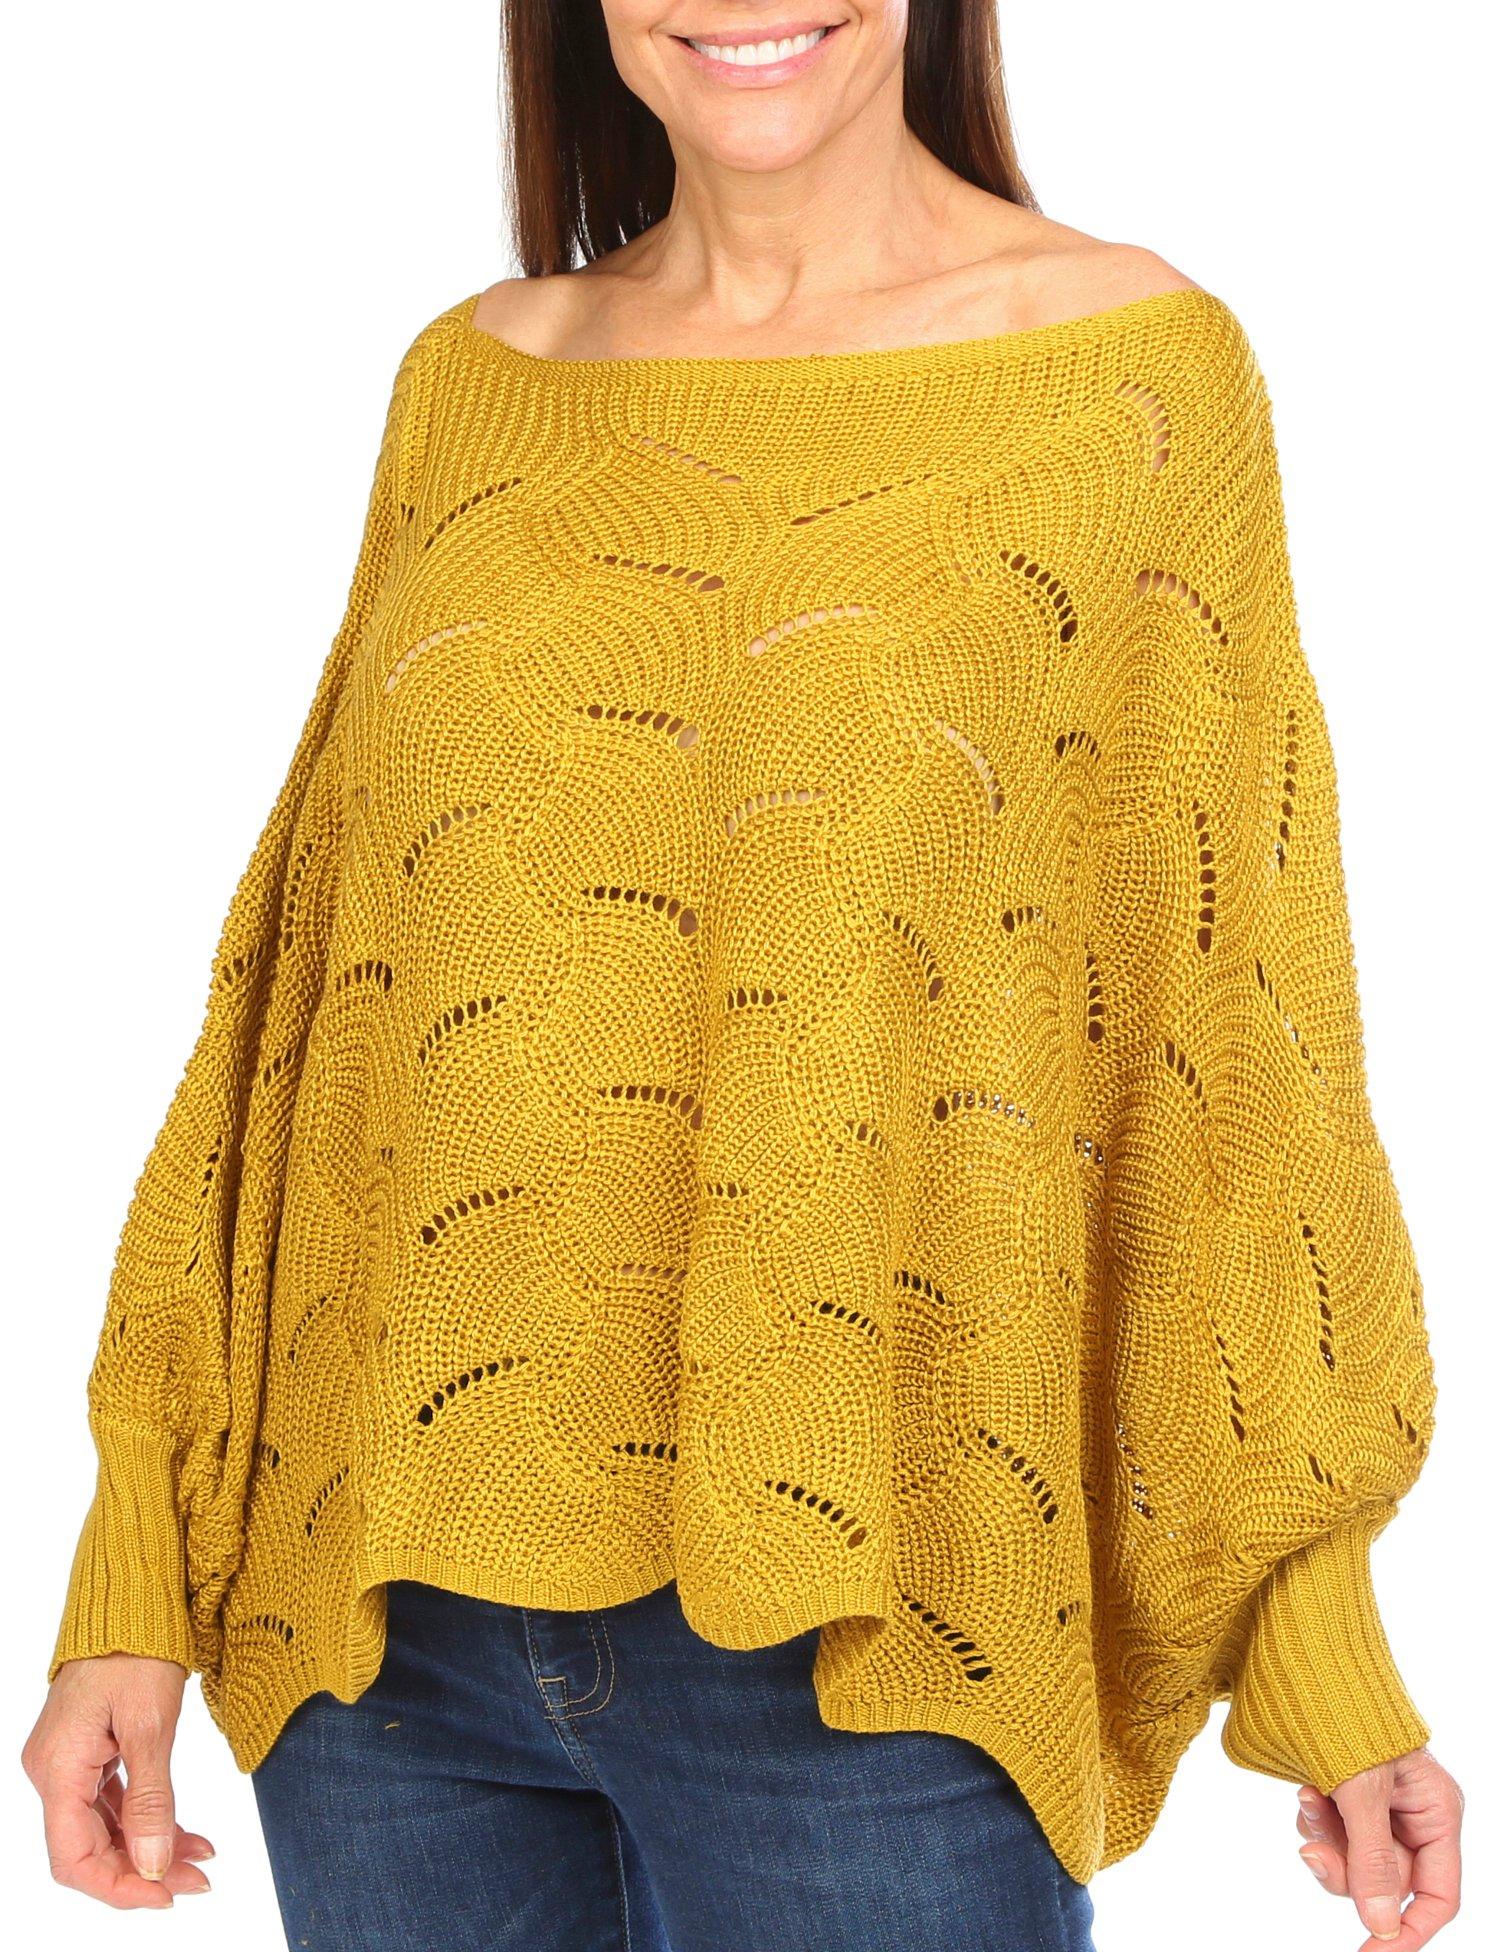 Bunulu Women's Long Sleeve Crocheted Sweater